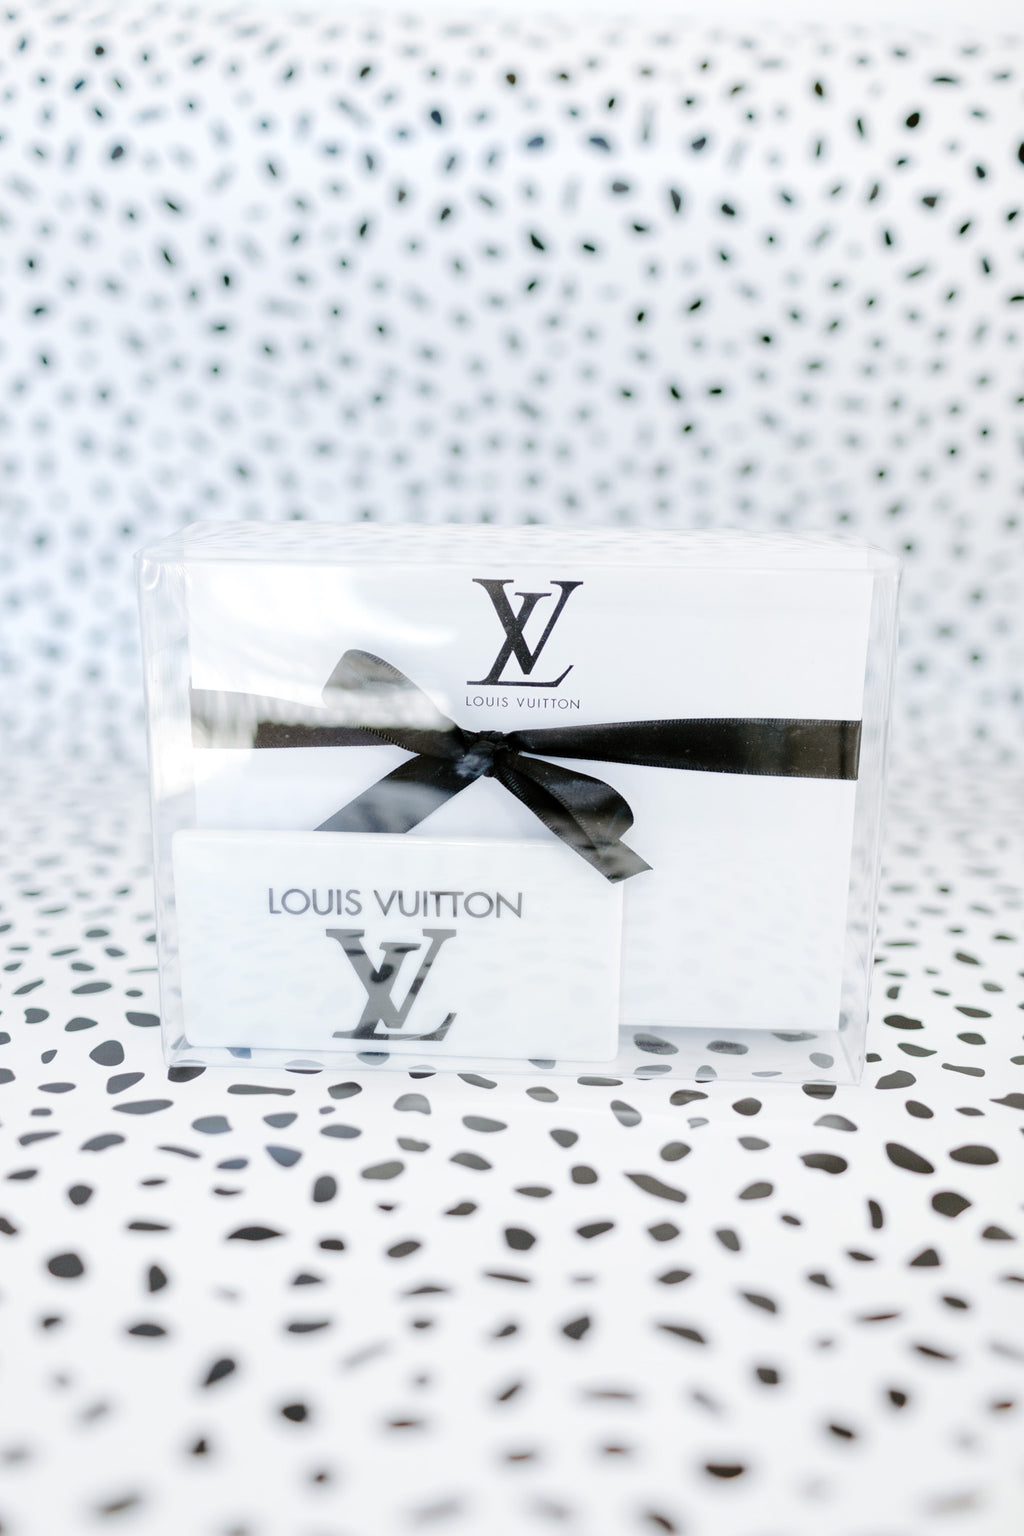 Louis Vuitton Desk Set – Classic Touch